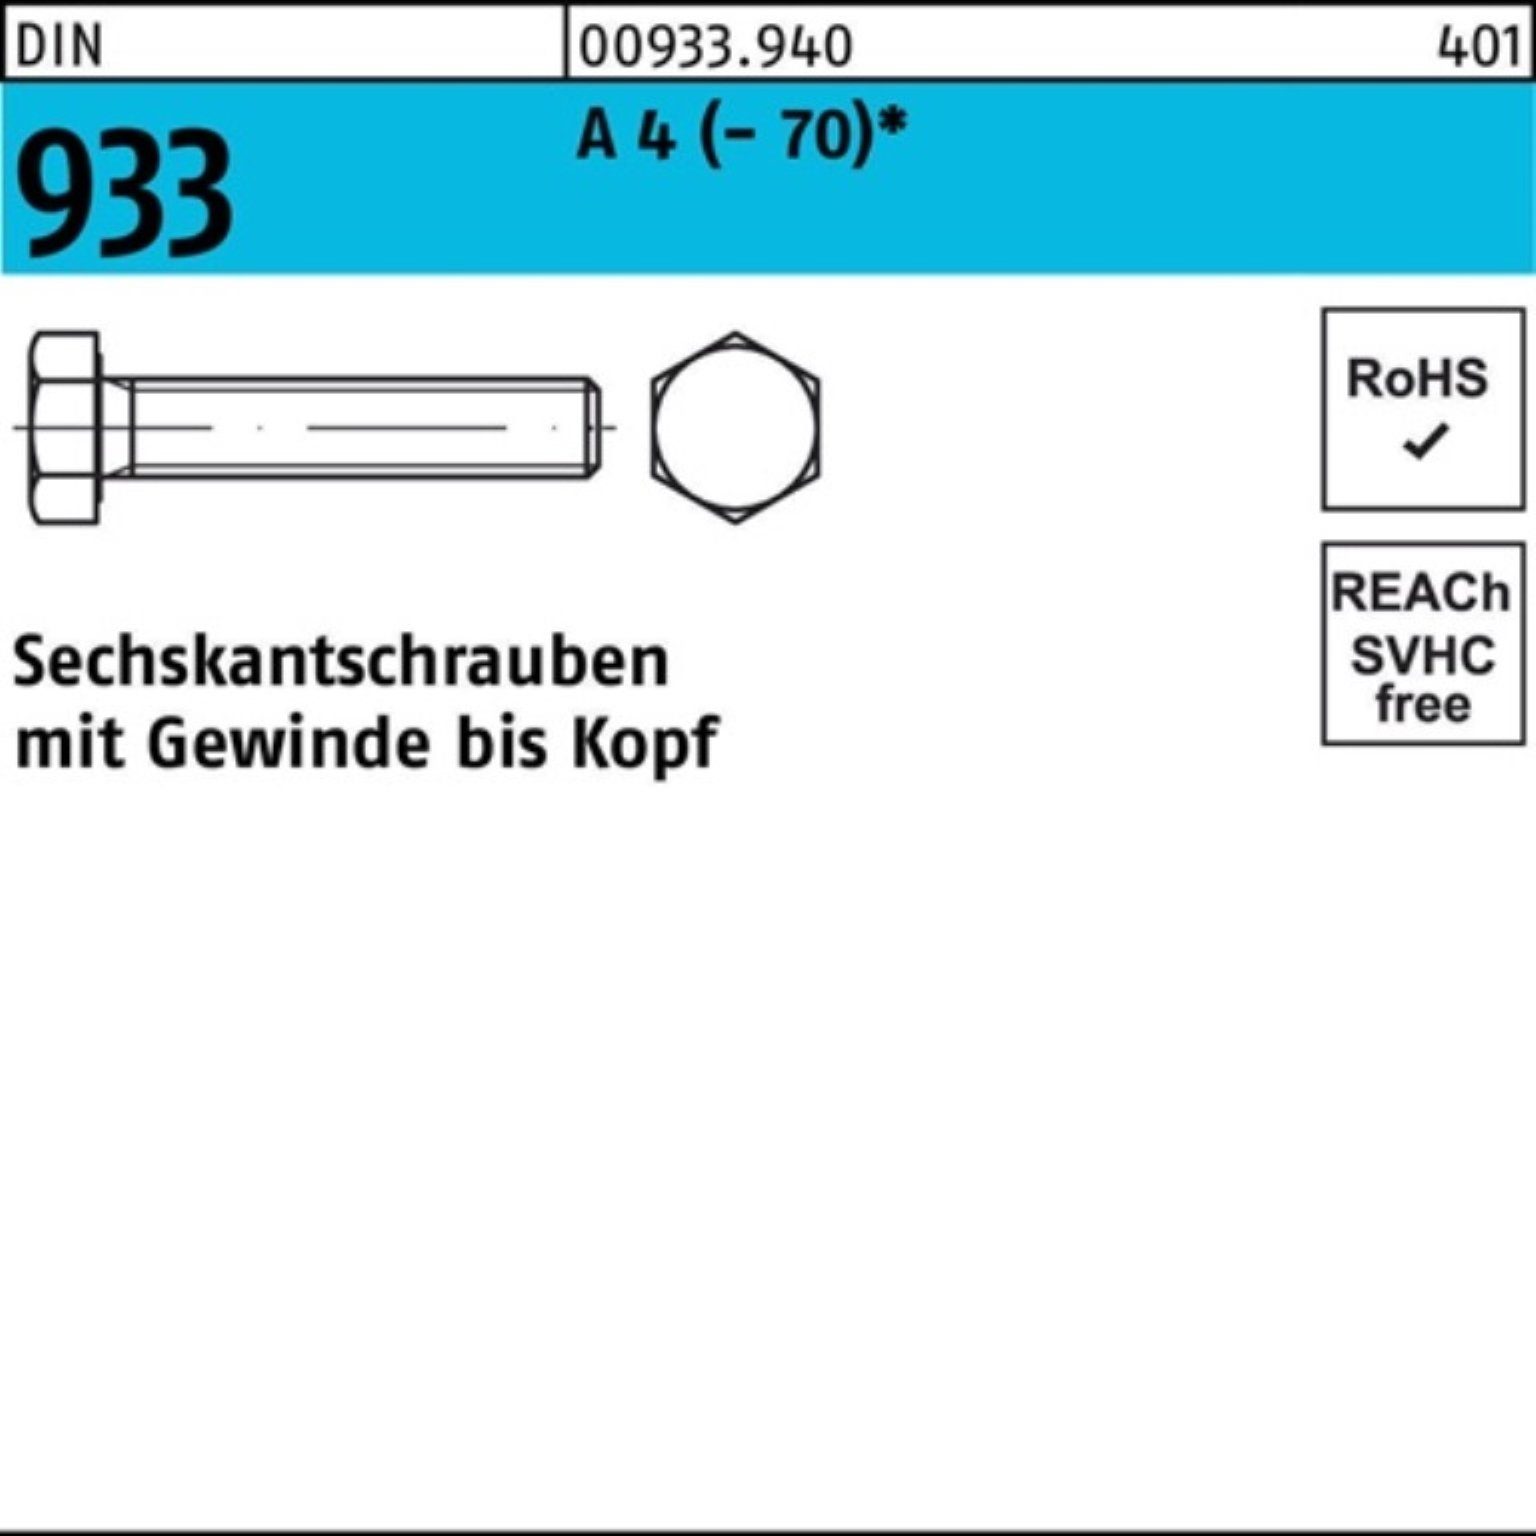 Reyher Sechskantschraube 100er Pack Sechskantschraube DIN Stück VG 933 D M22x A 4 (70) 1 120